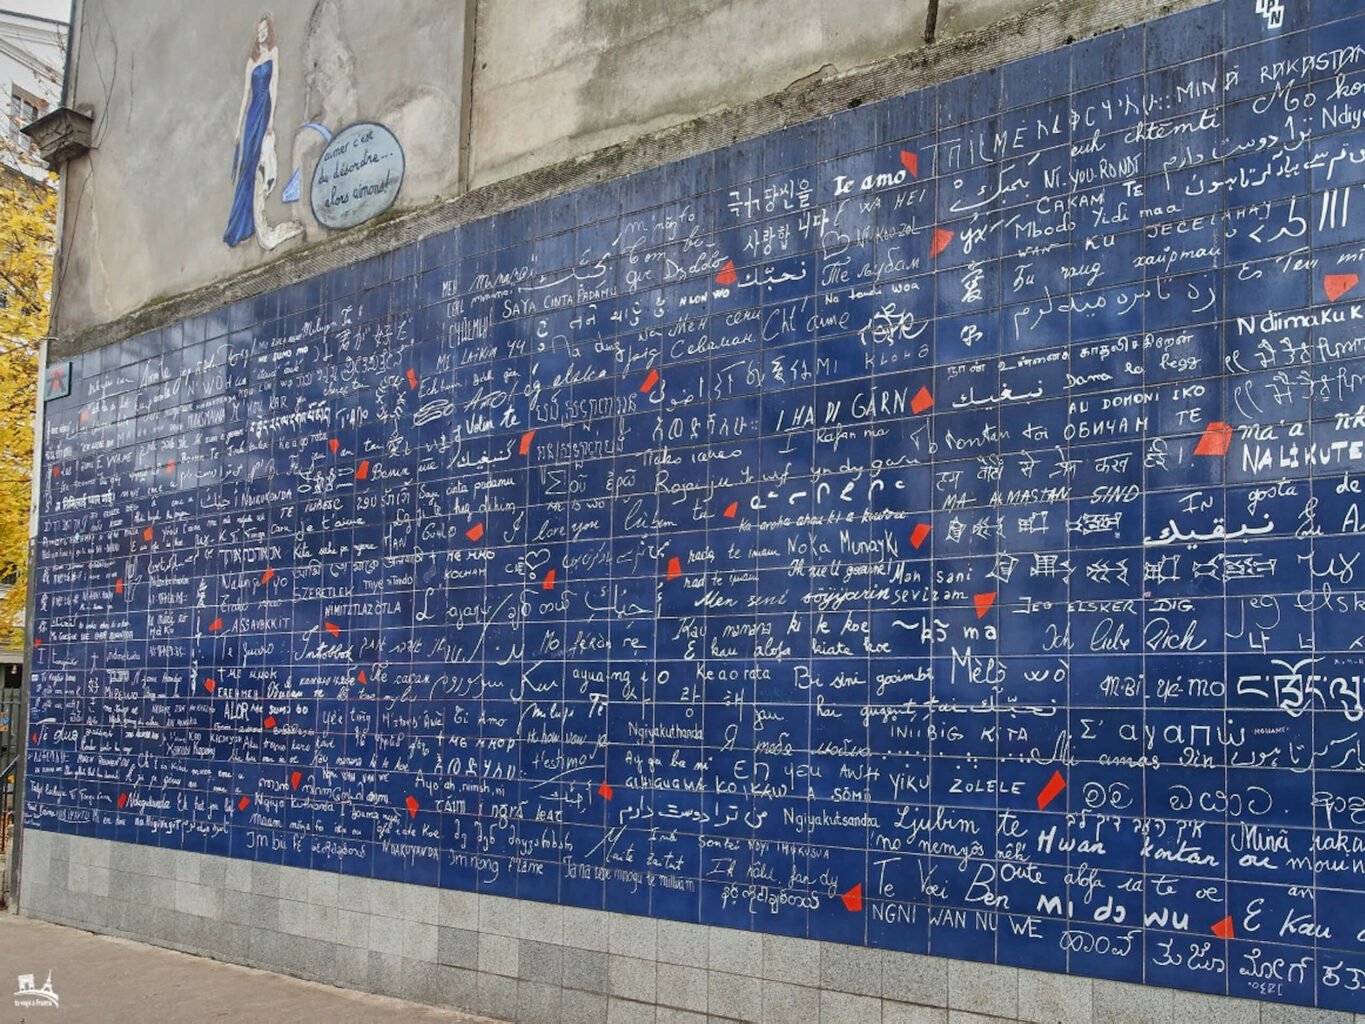 El muro de los te quiero, Montmartre